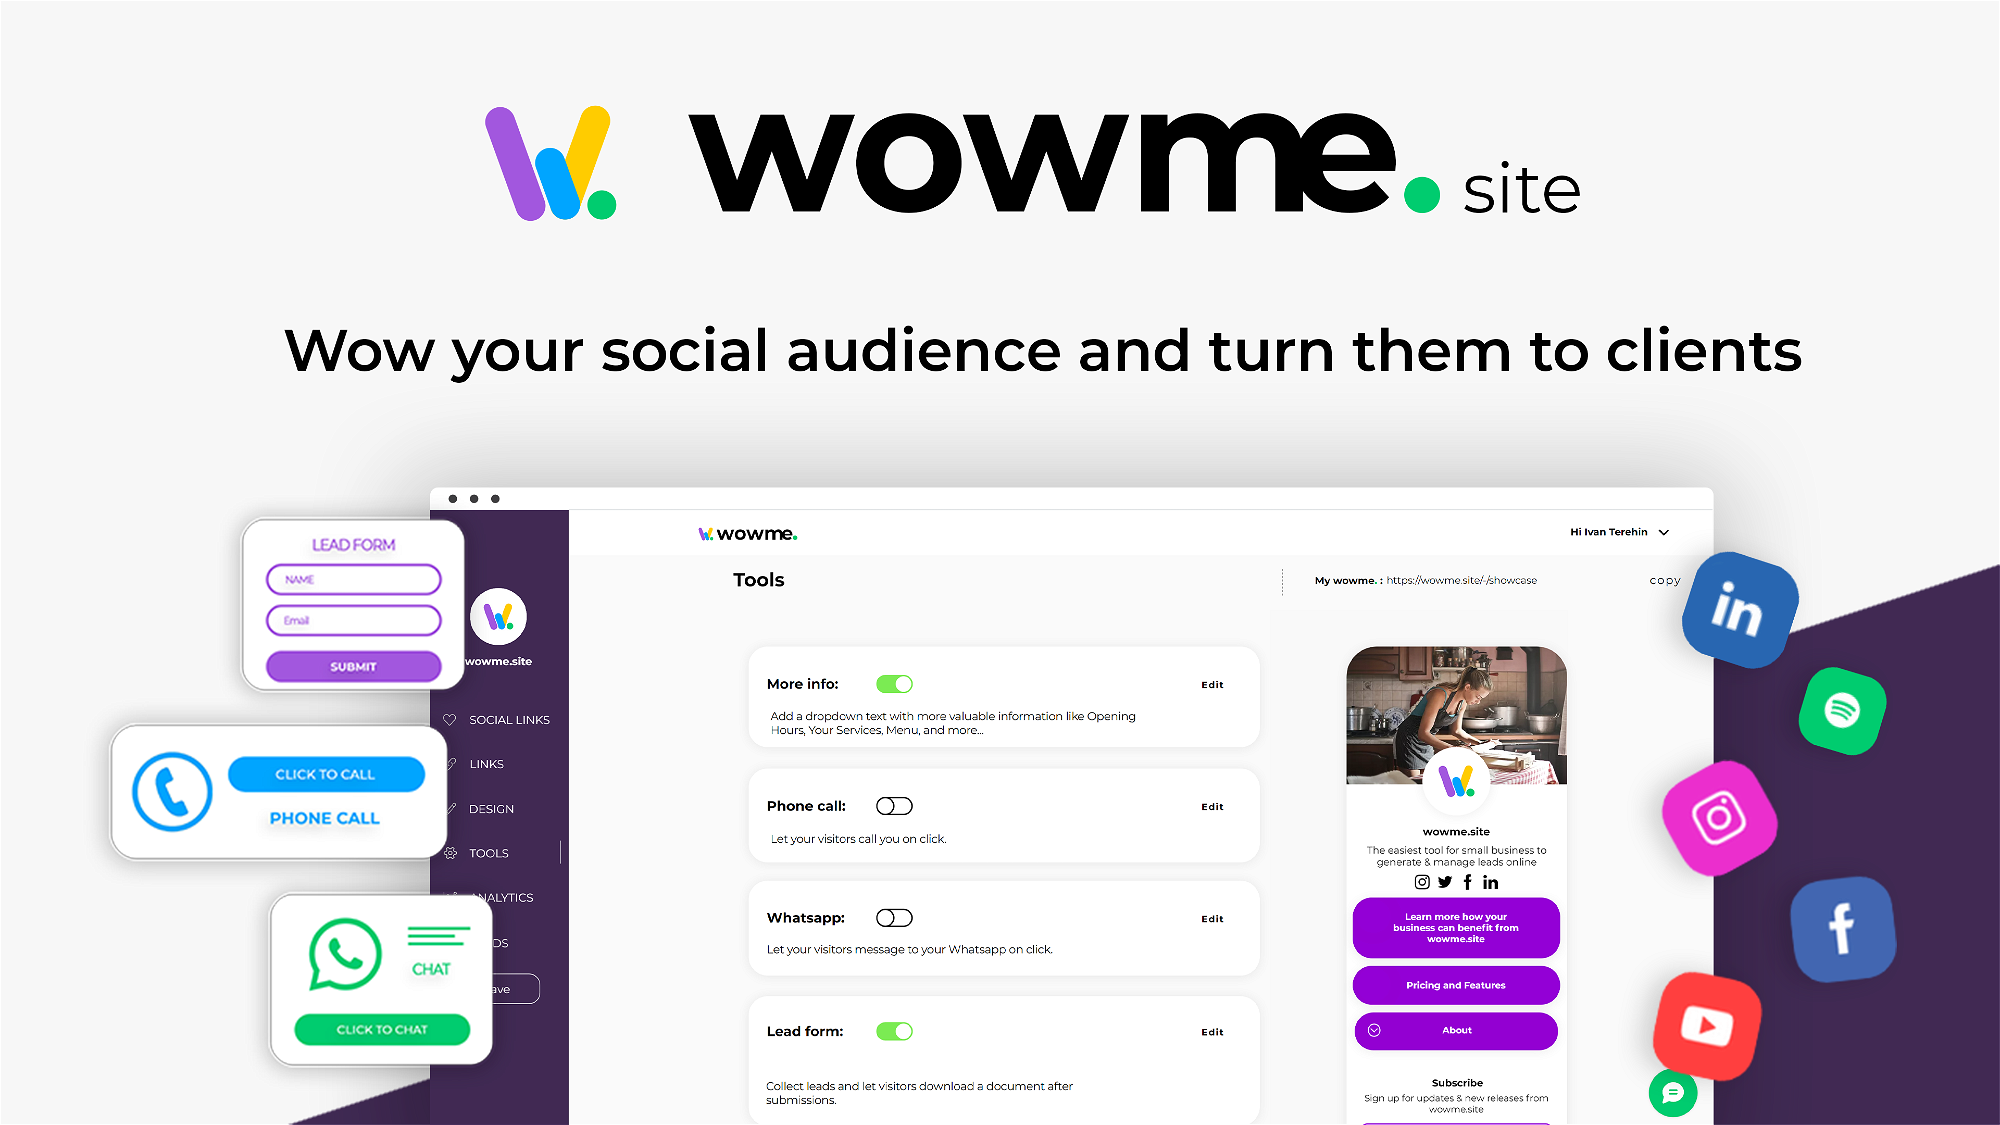 Wowme.site